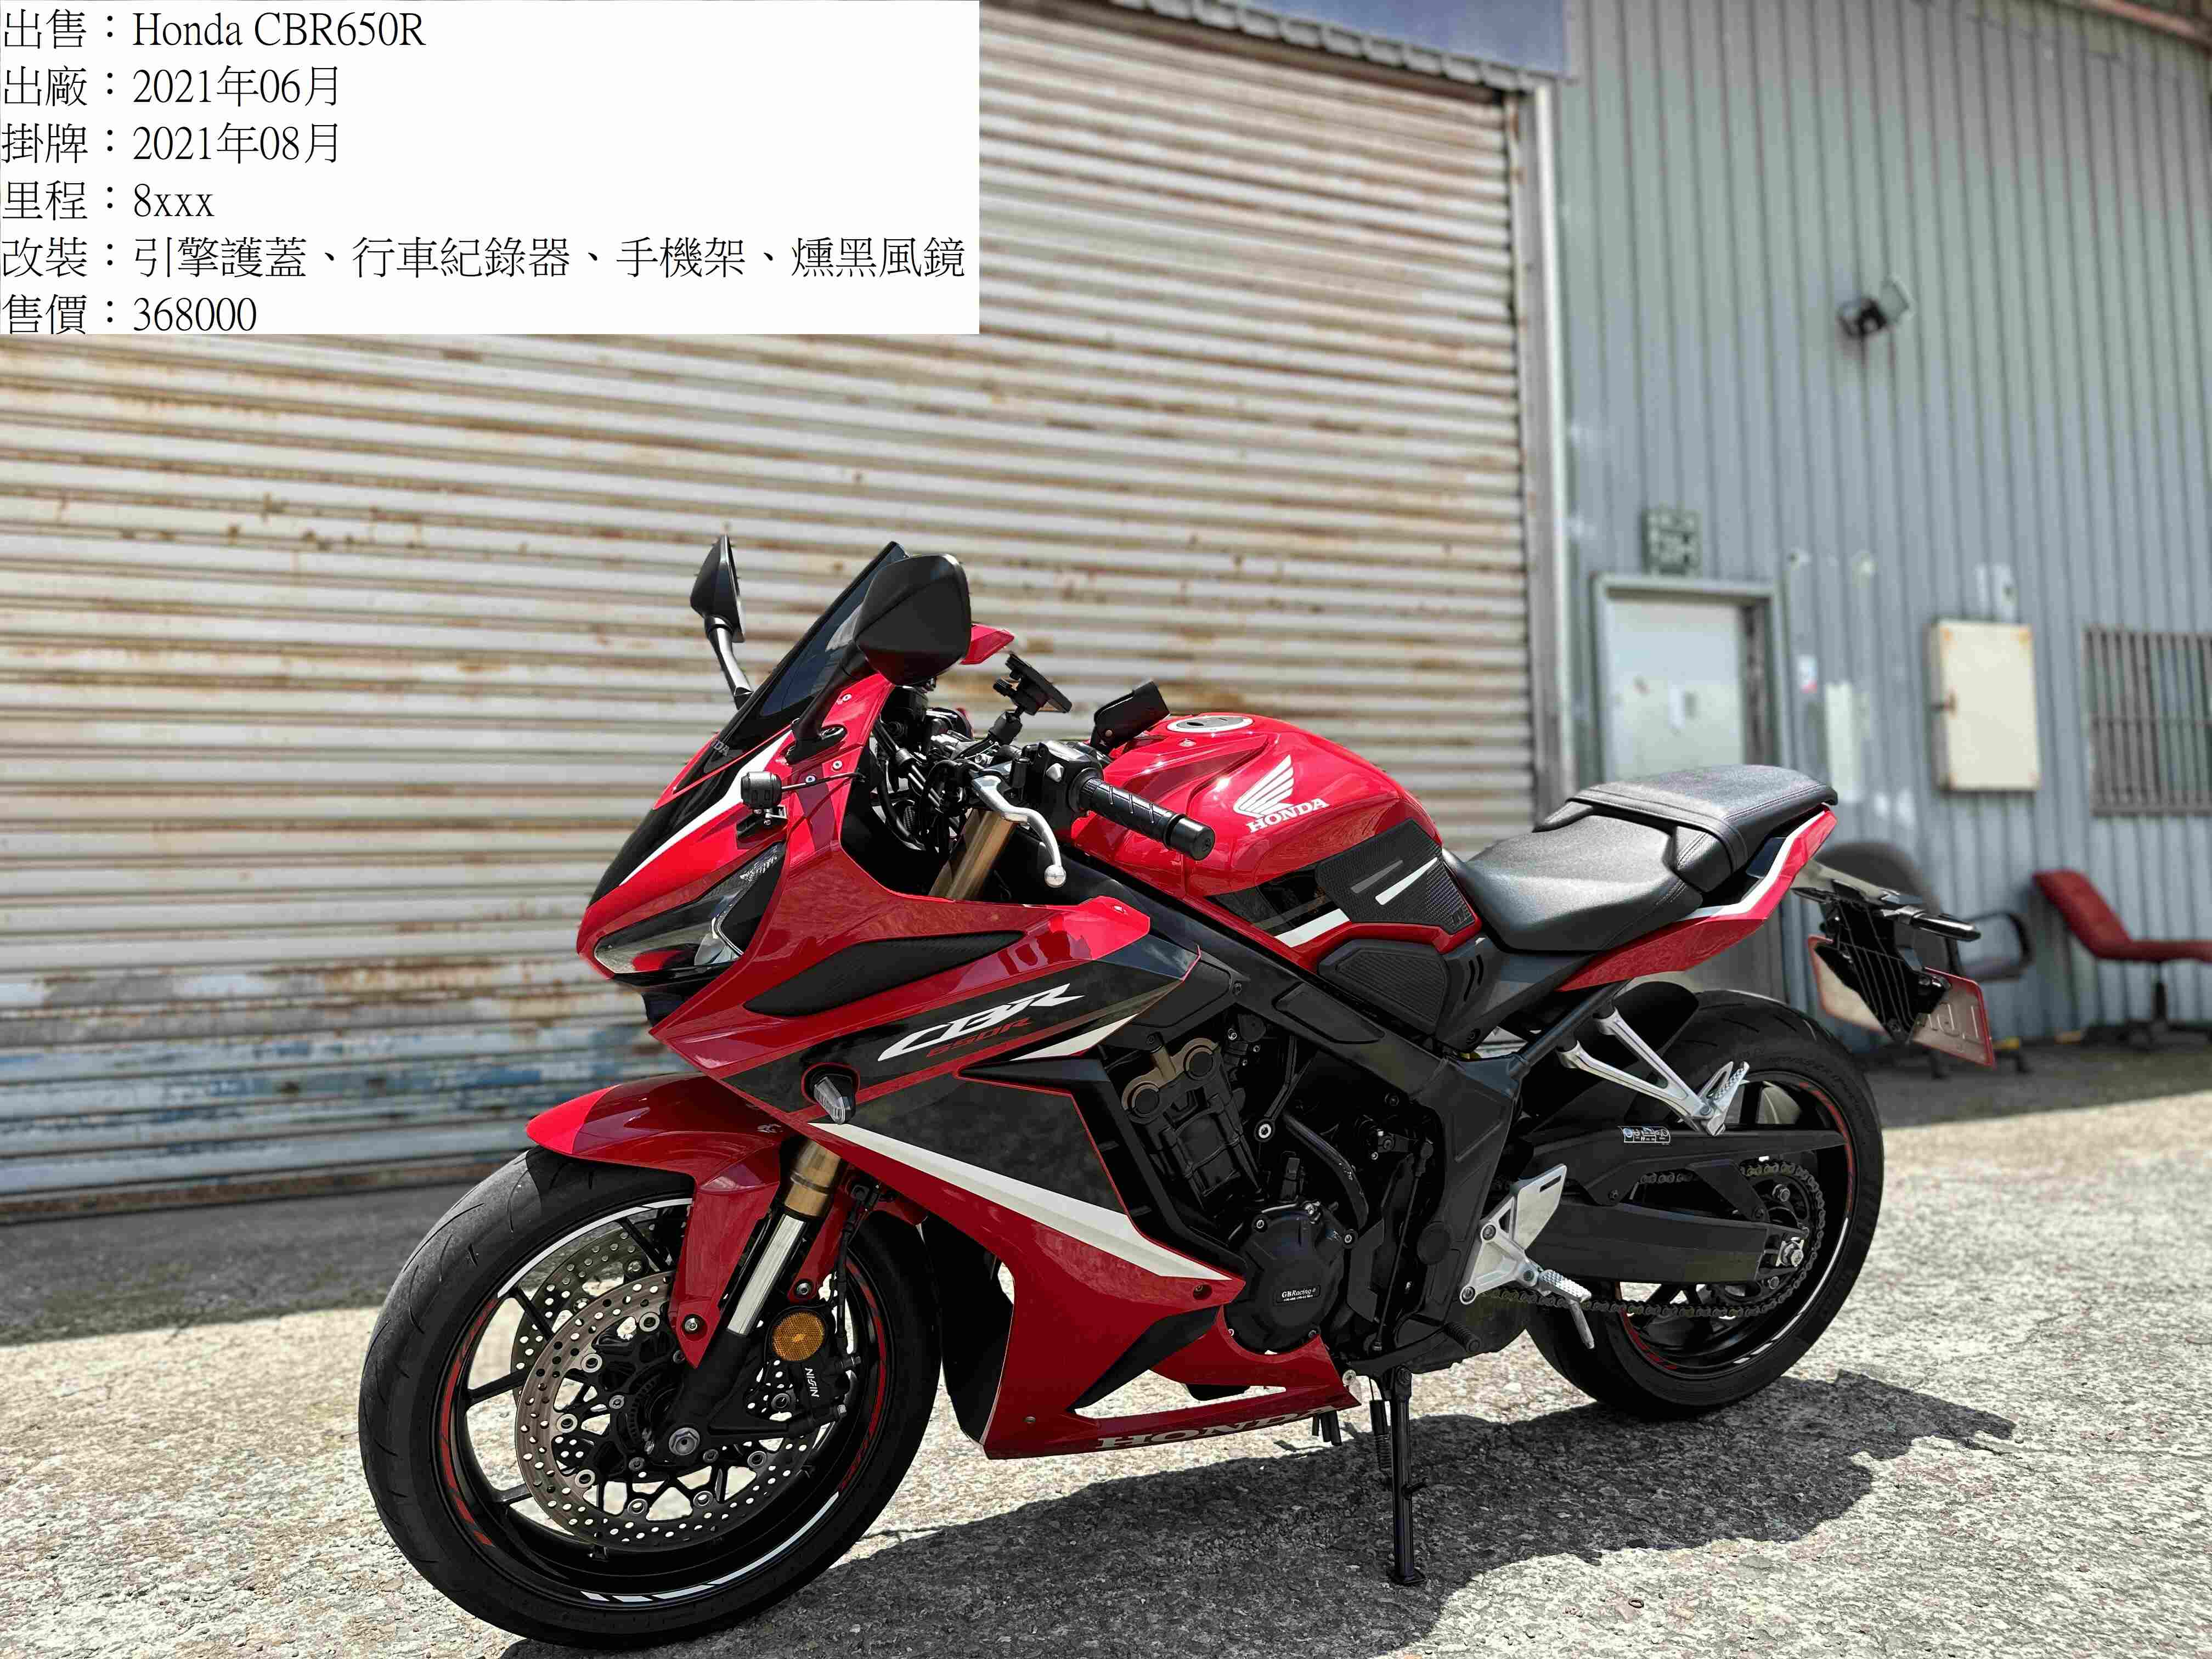 【湯姆重機】HONDA CBR650R - 「Webike-摩托車市」 湯姆重機 2021 Honda CBR650R